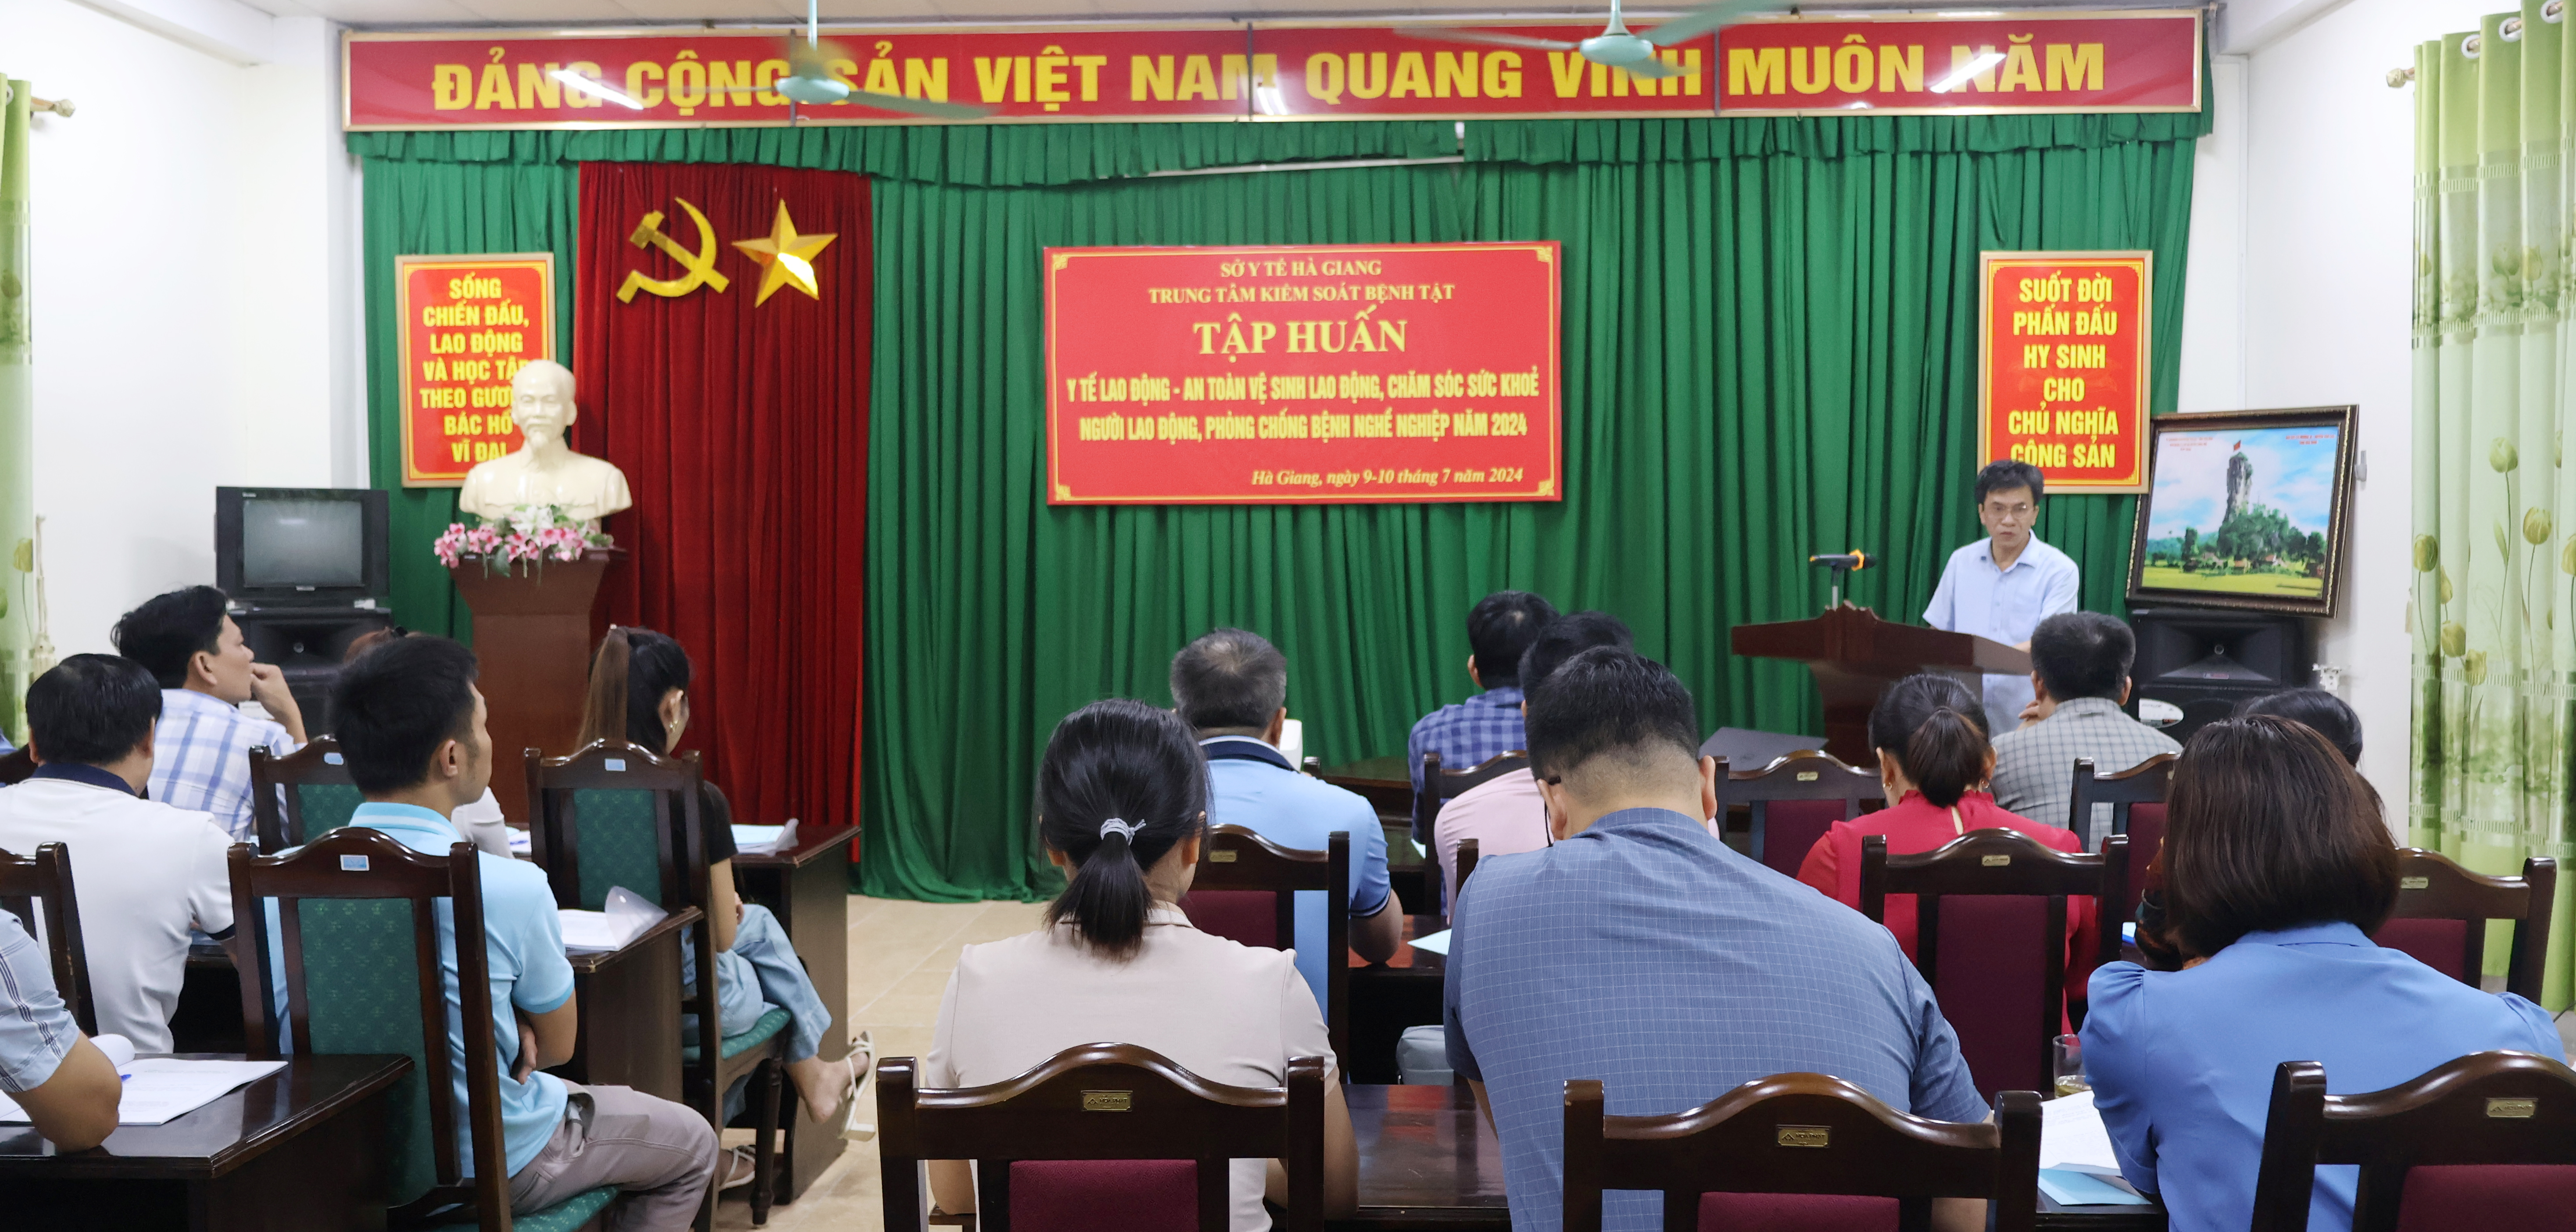 Đ/c Nguyễn Xuân Thu, Phó Giám đốc Trung tâm Kiểm soát bệnh tật khai mạc lớp tập huấn